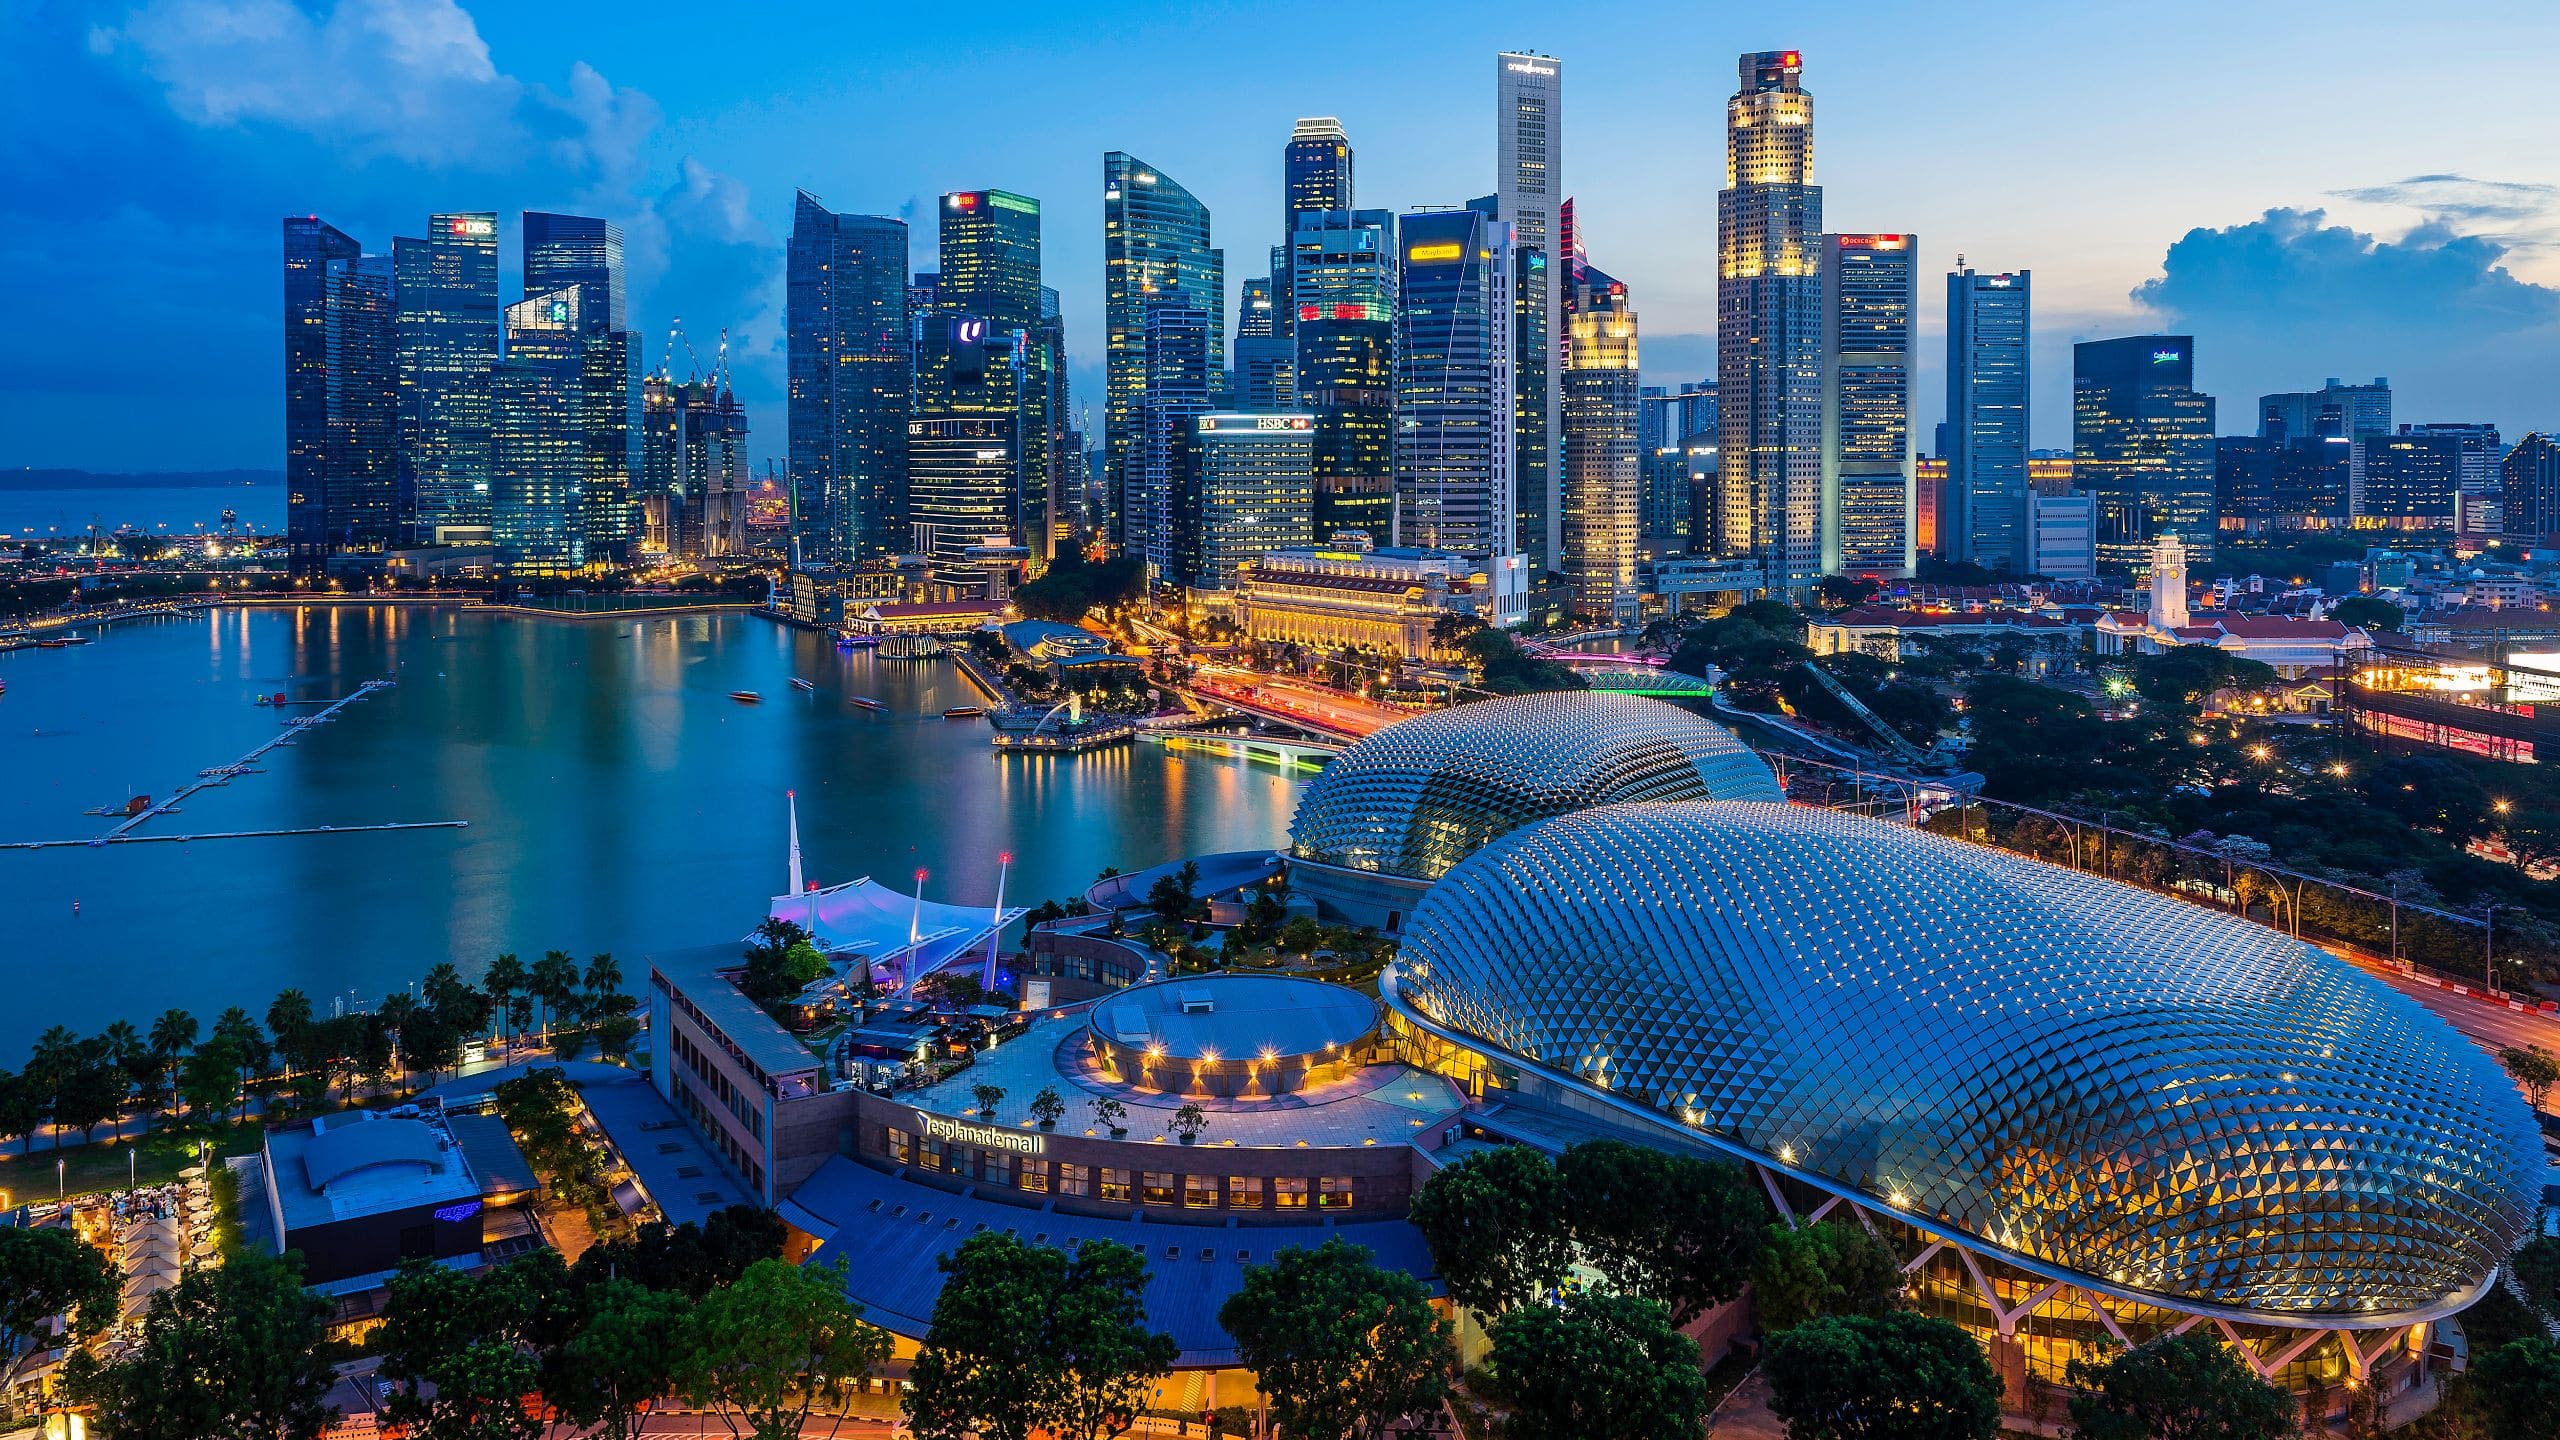 các tòa nhà tại Singapore đã nhận được các chứng chỉ về Green Mark